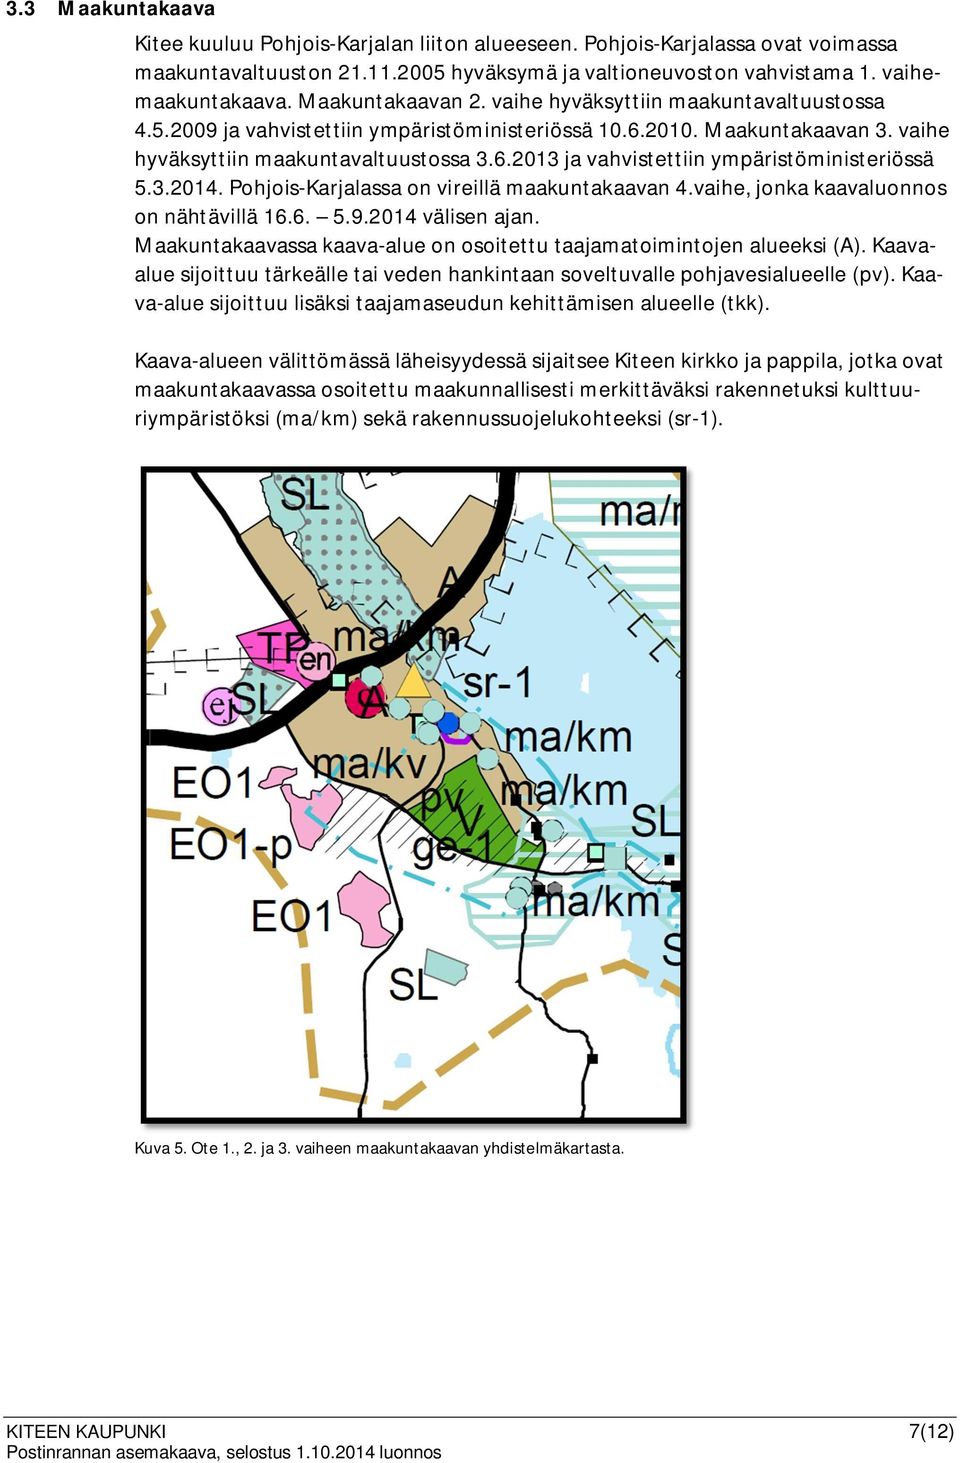 3.2014. Pohjois-Karjalassa on vireillä maakuntakaavan 4.vaihe, jonka kaavaluonnos on nähtävillä 16.6. 5.9.2014 välisen ajan. Maakuntakaavassa kaava-alue on osoitettu taajamatoimintojen alueeksi (A).